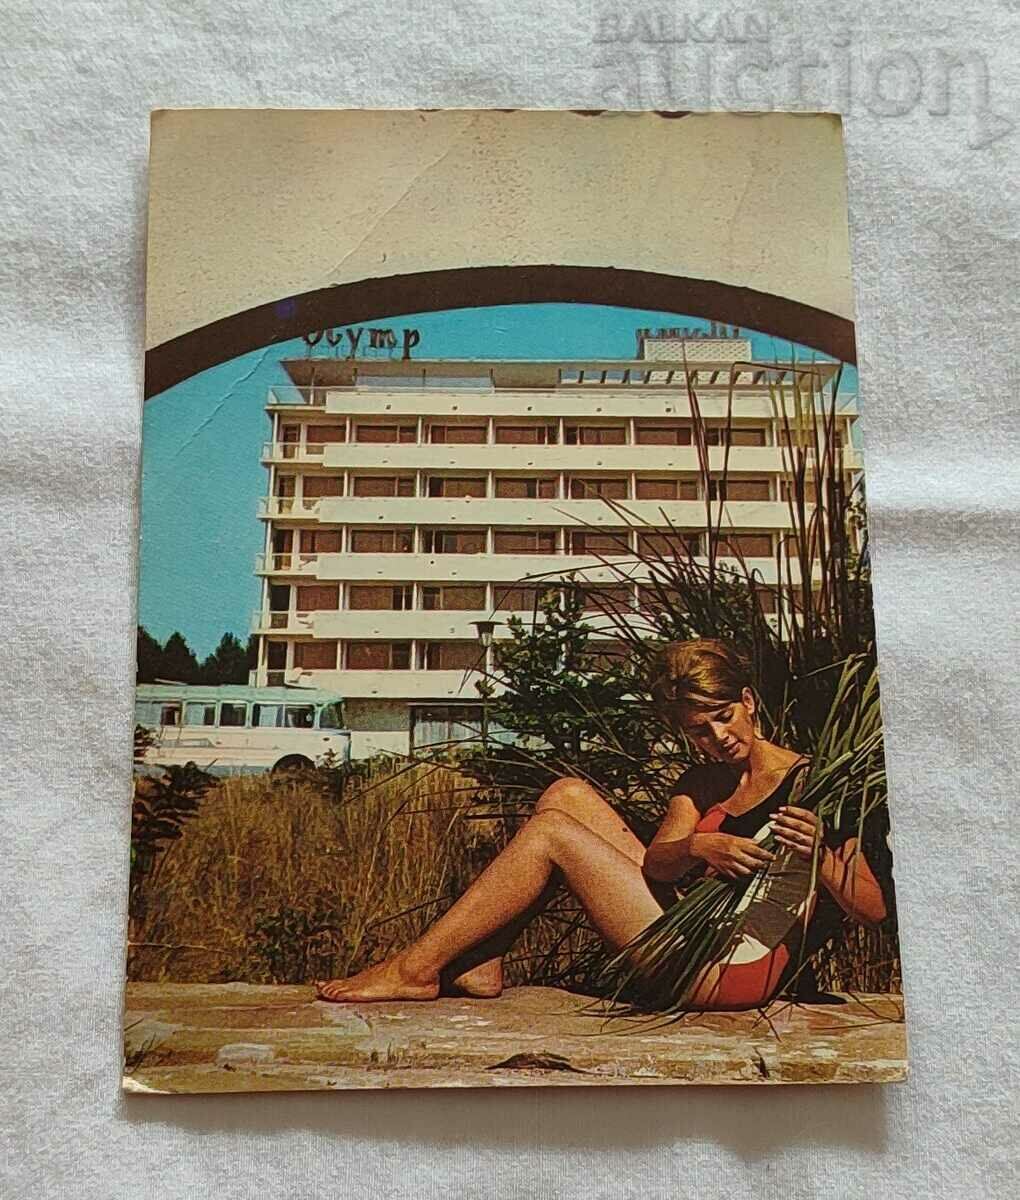 ΞΕΝΟΔΟΧΕΙΟ SUNSHINE BEACH "OLYMPUS" 1970 Τ.Κ.